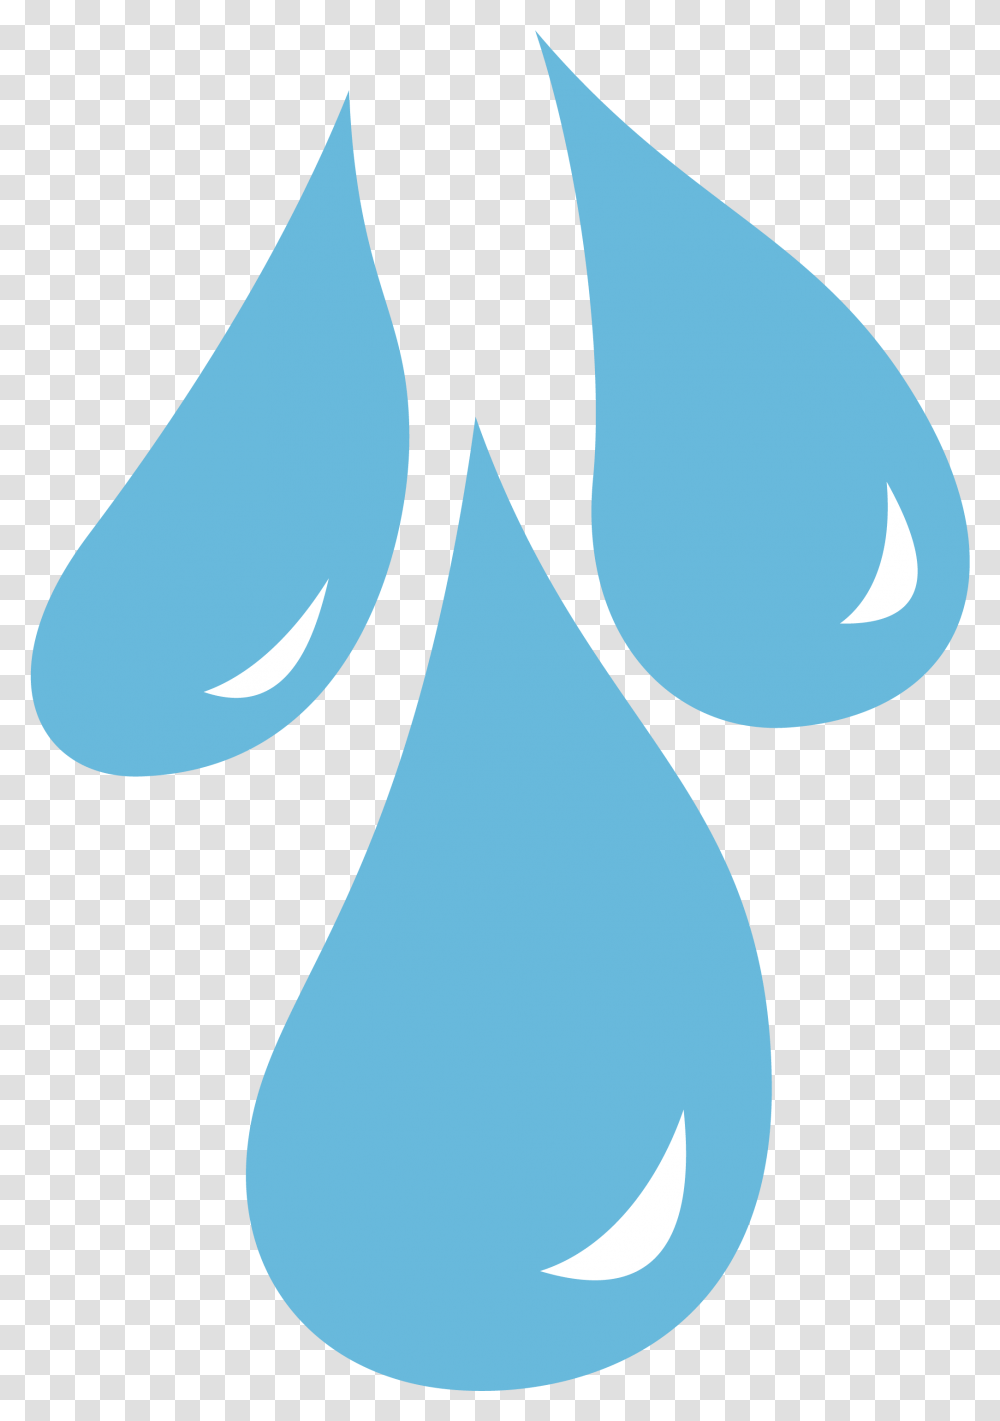 Water Droplet Cartoon Tear Drop Transparent Png